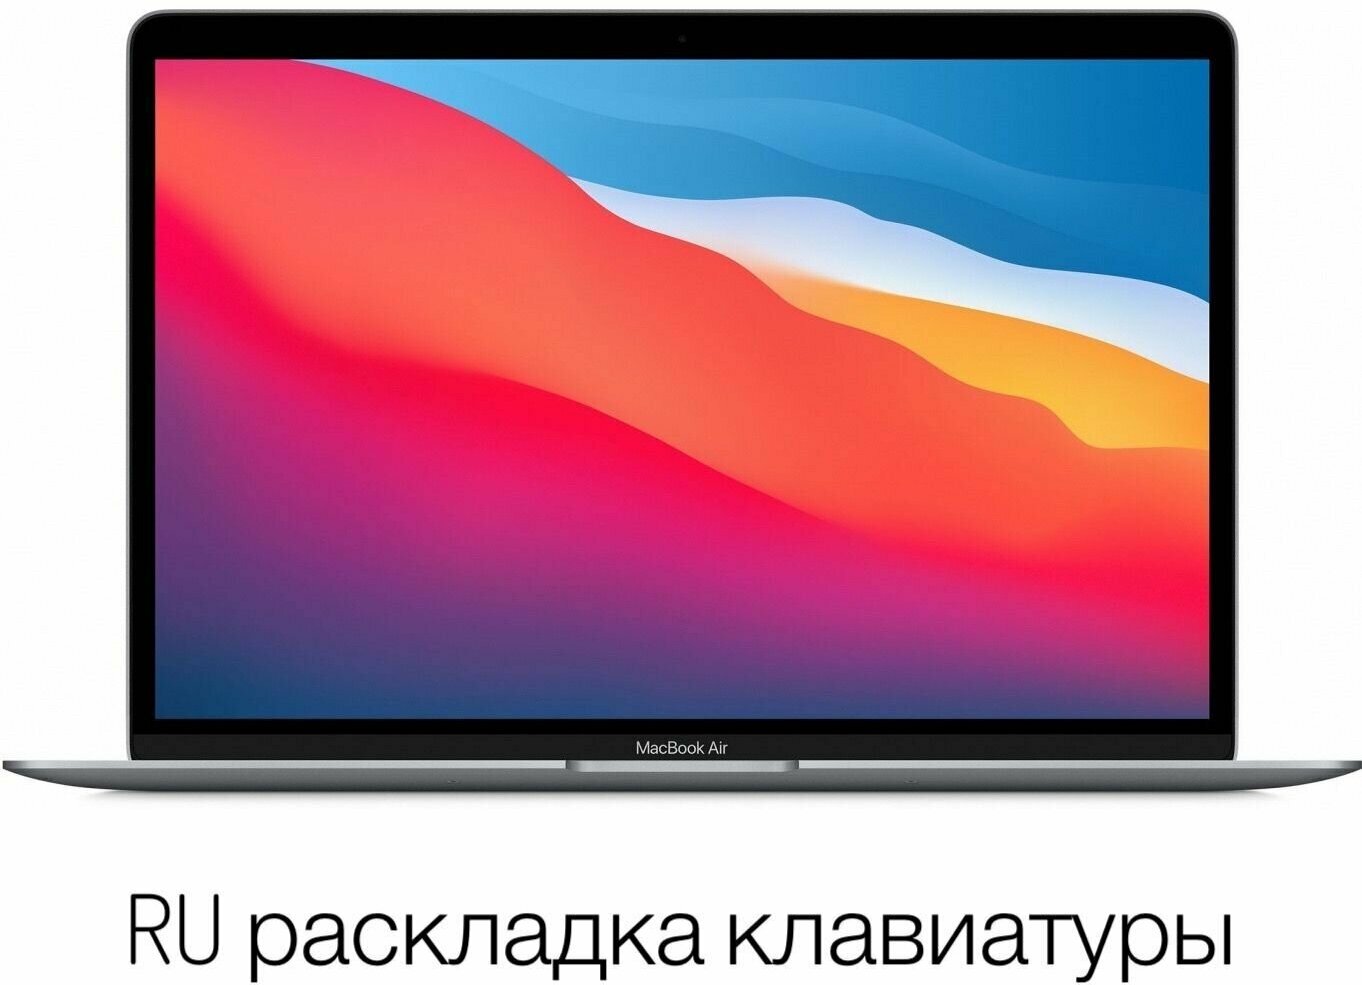 13.3" Ноутбук Apple MacBook Air M1 (MGN63), RAM 8 ГБ, SSD 256 ГБ, space gray/серый космос (русская раскладка)